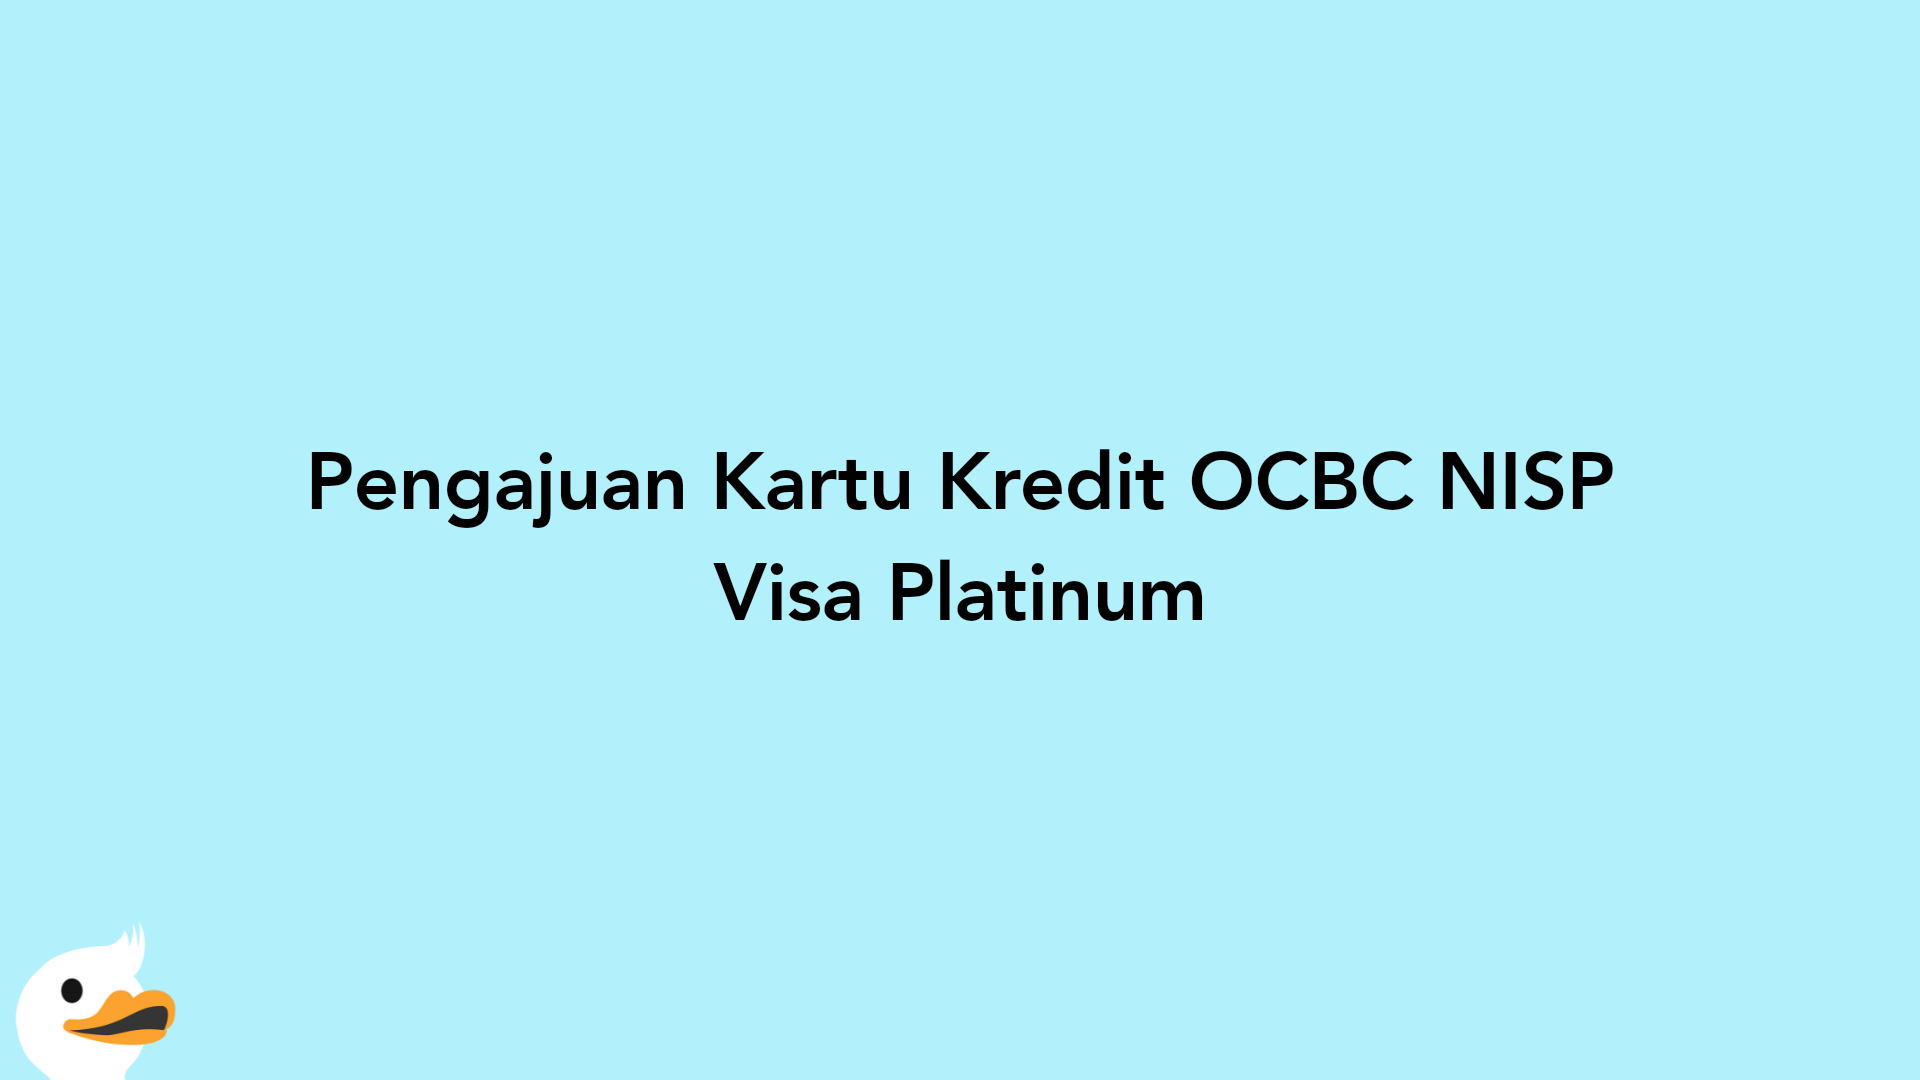 Pengajuan Kartu Kredit OCBC NISP Visa Platinum